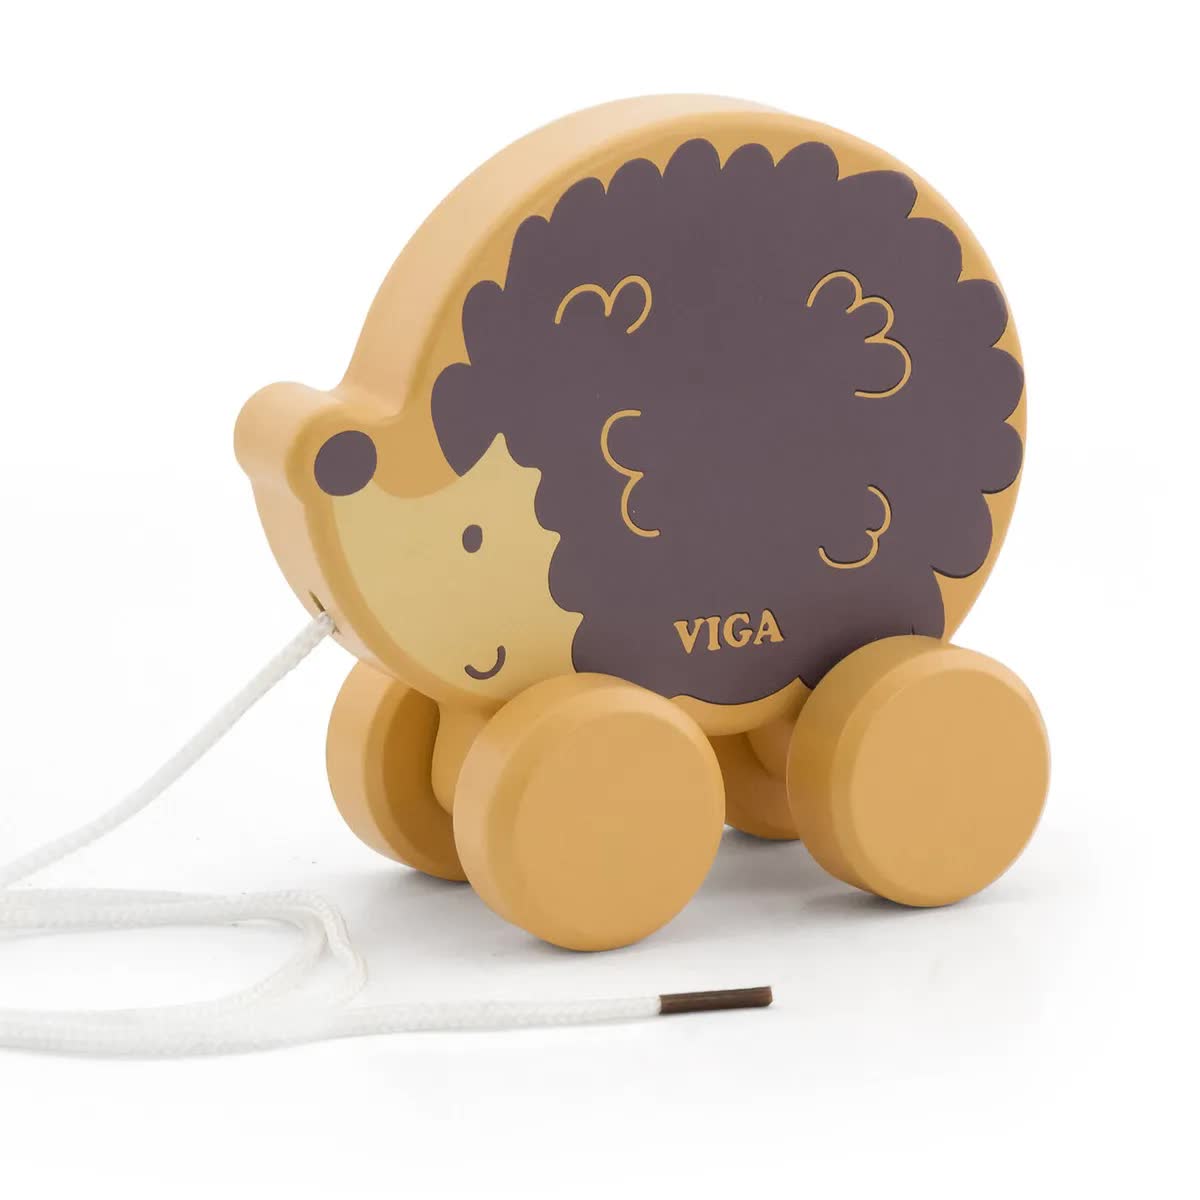 Каталка на веревочке Ёжик VIGA 44003 развивающие игрушки из дерева viga toys каталка из дерева на веревочке белый медведь 44001